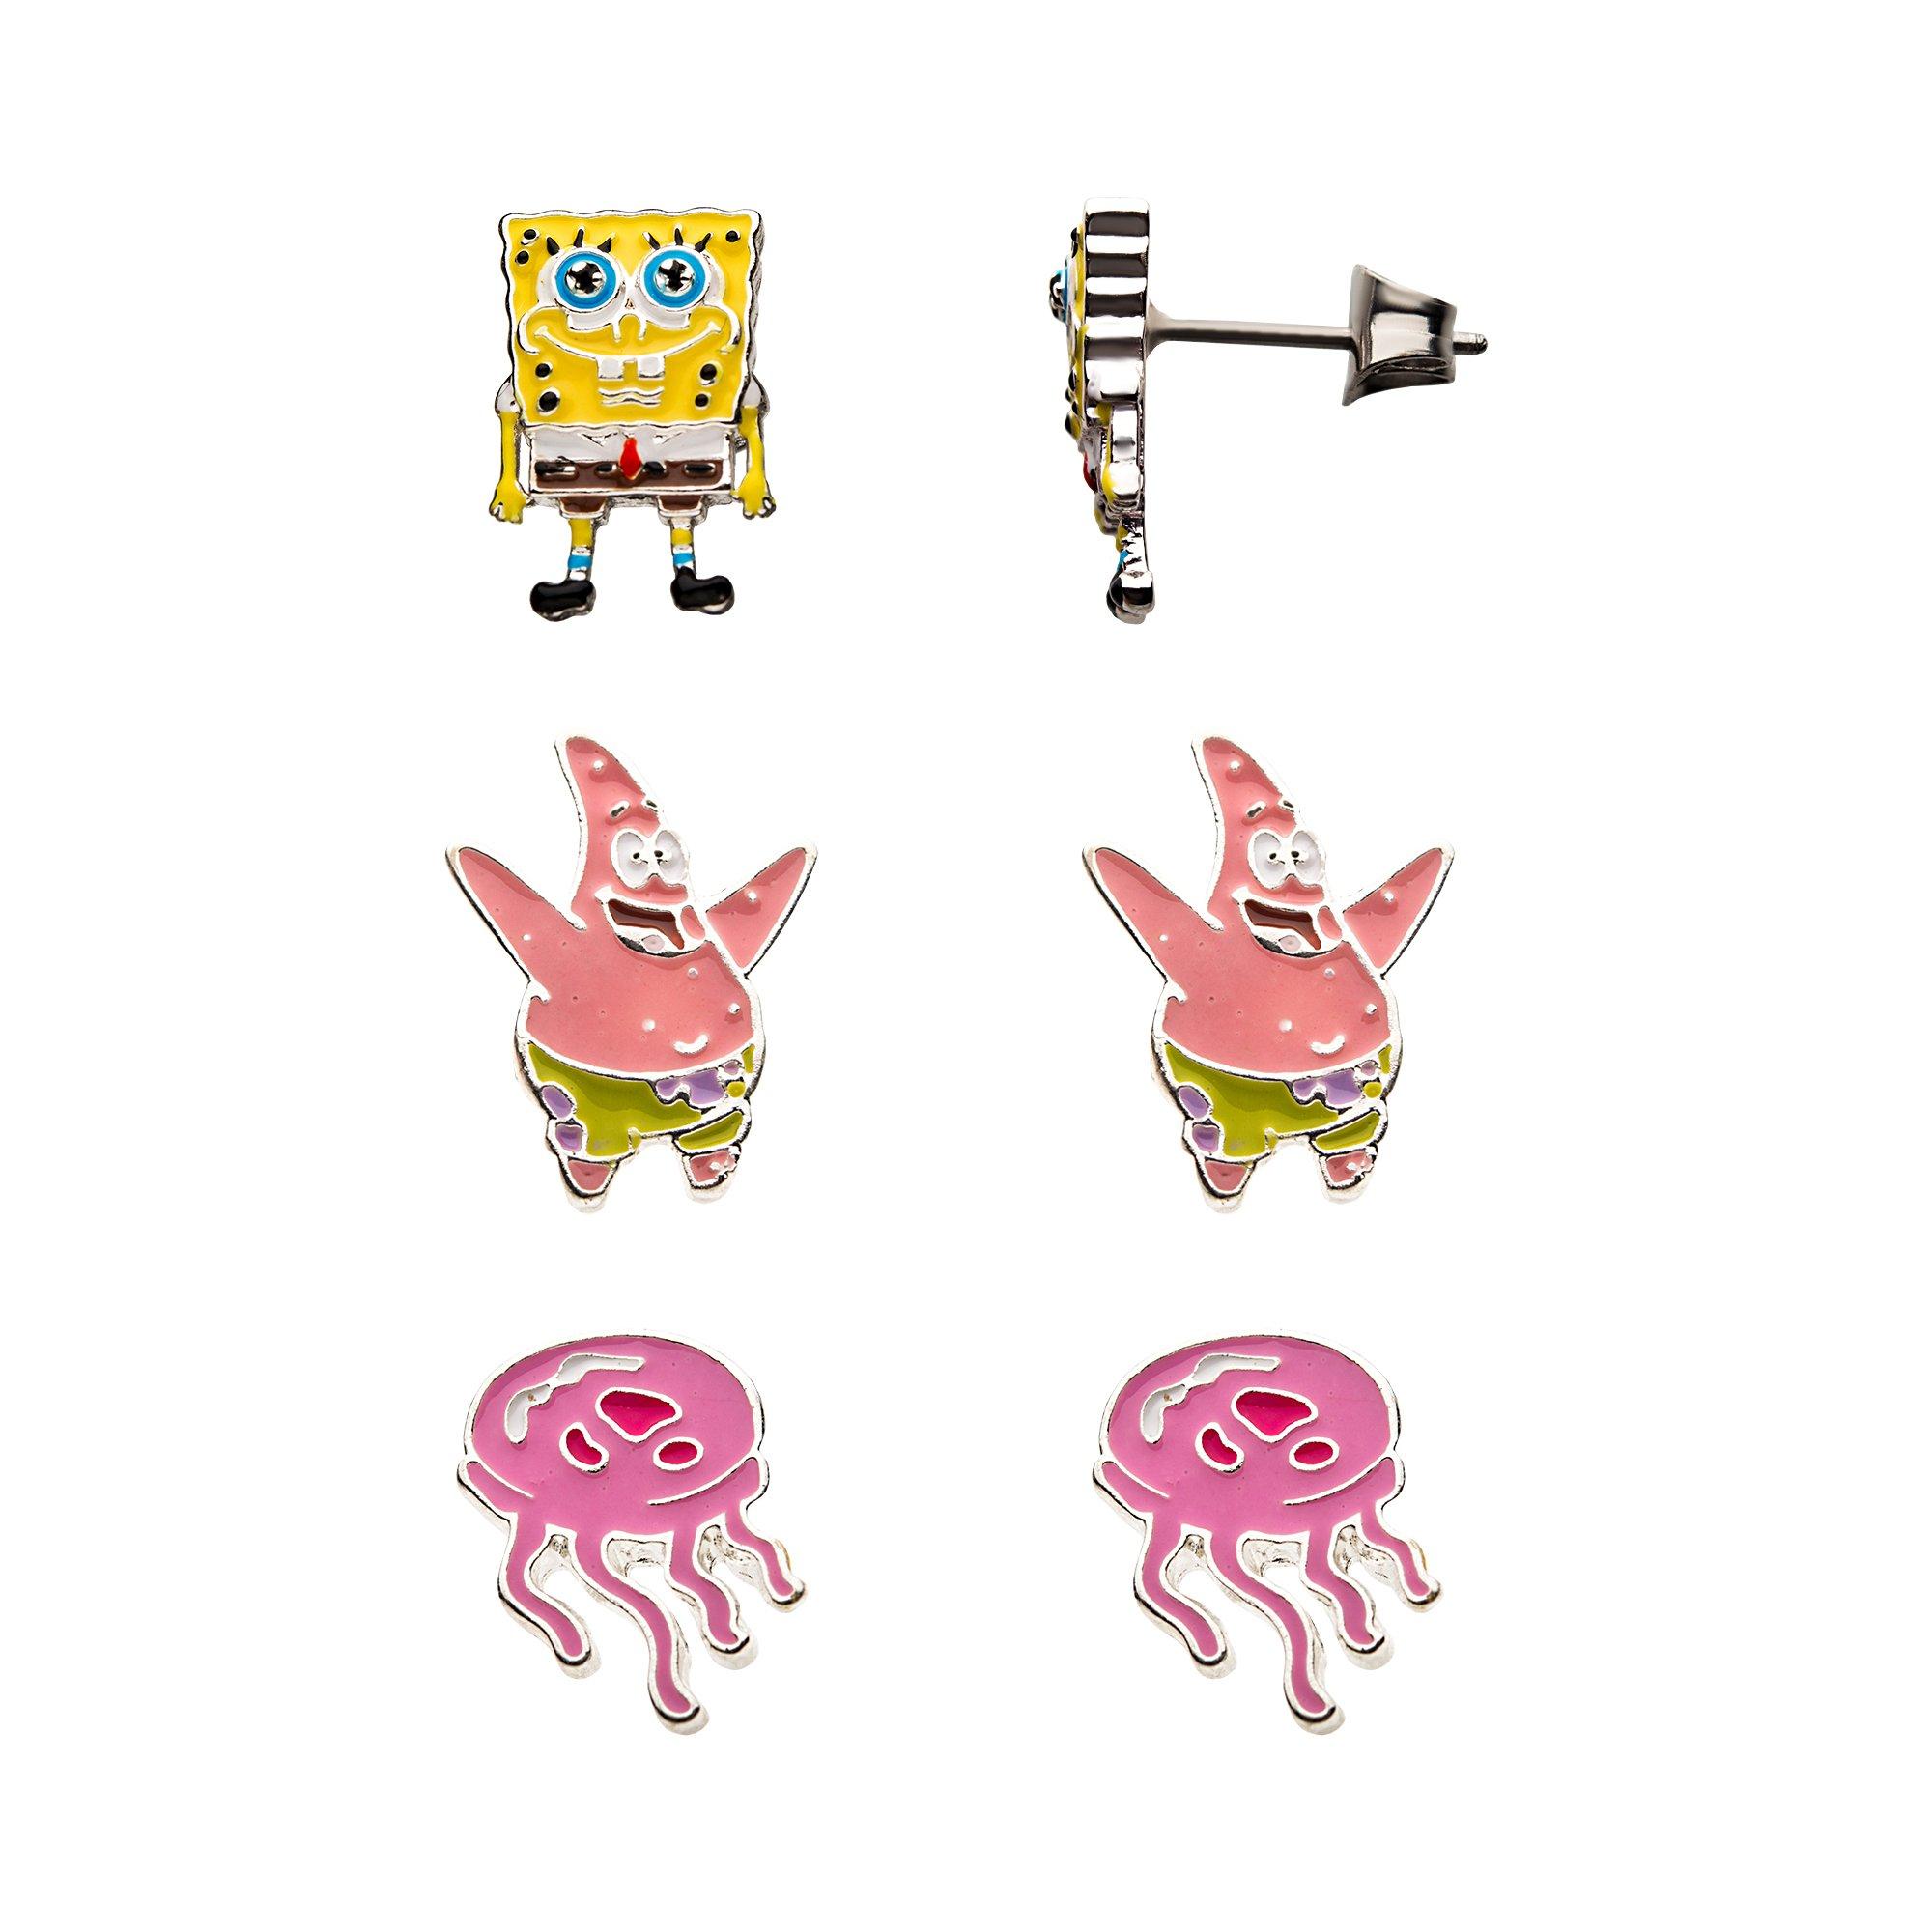 https://media.gamestop.com/i/gamestop/20006581/Nickelodeon-Spongebob-Squarepants-Patrick-Star-and-Jellyfish-3-Pack-Stud-Earring-Set